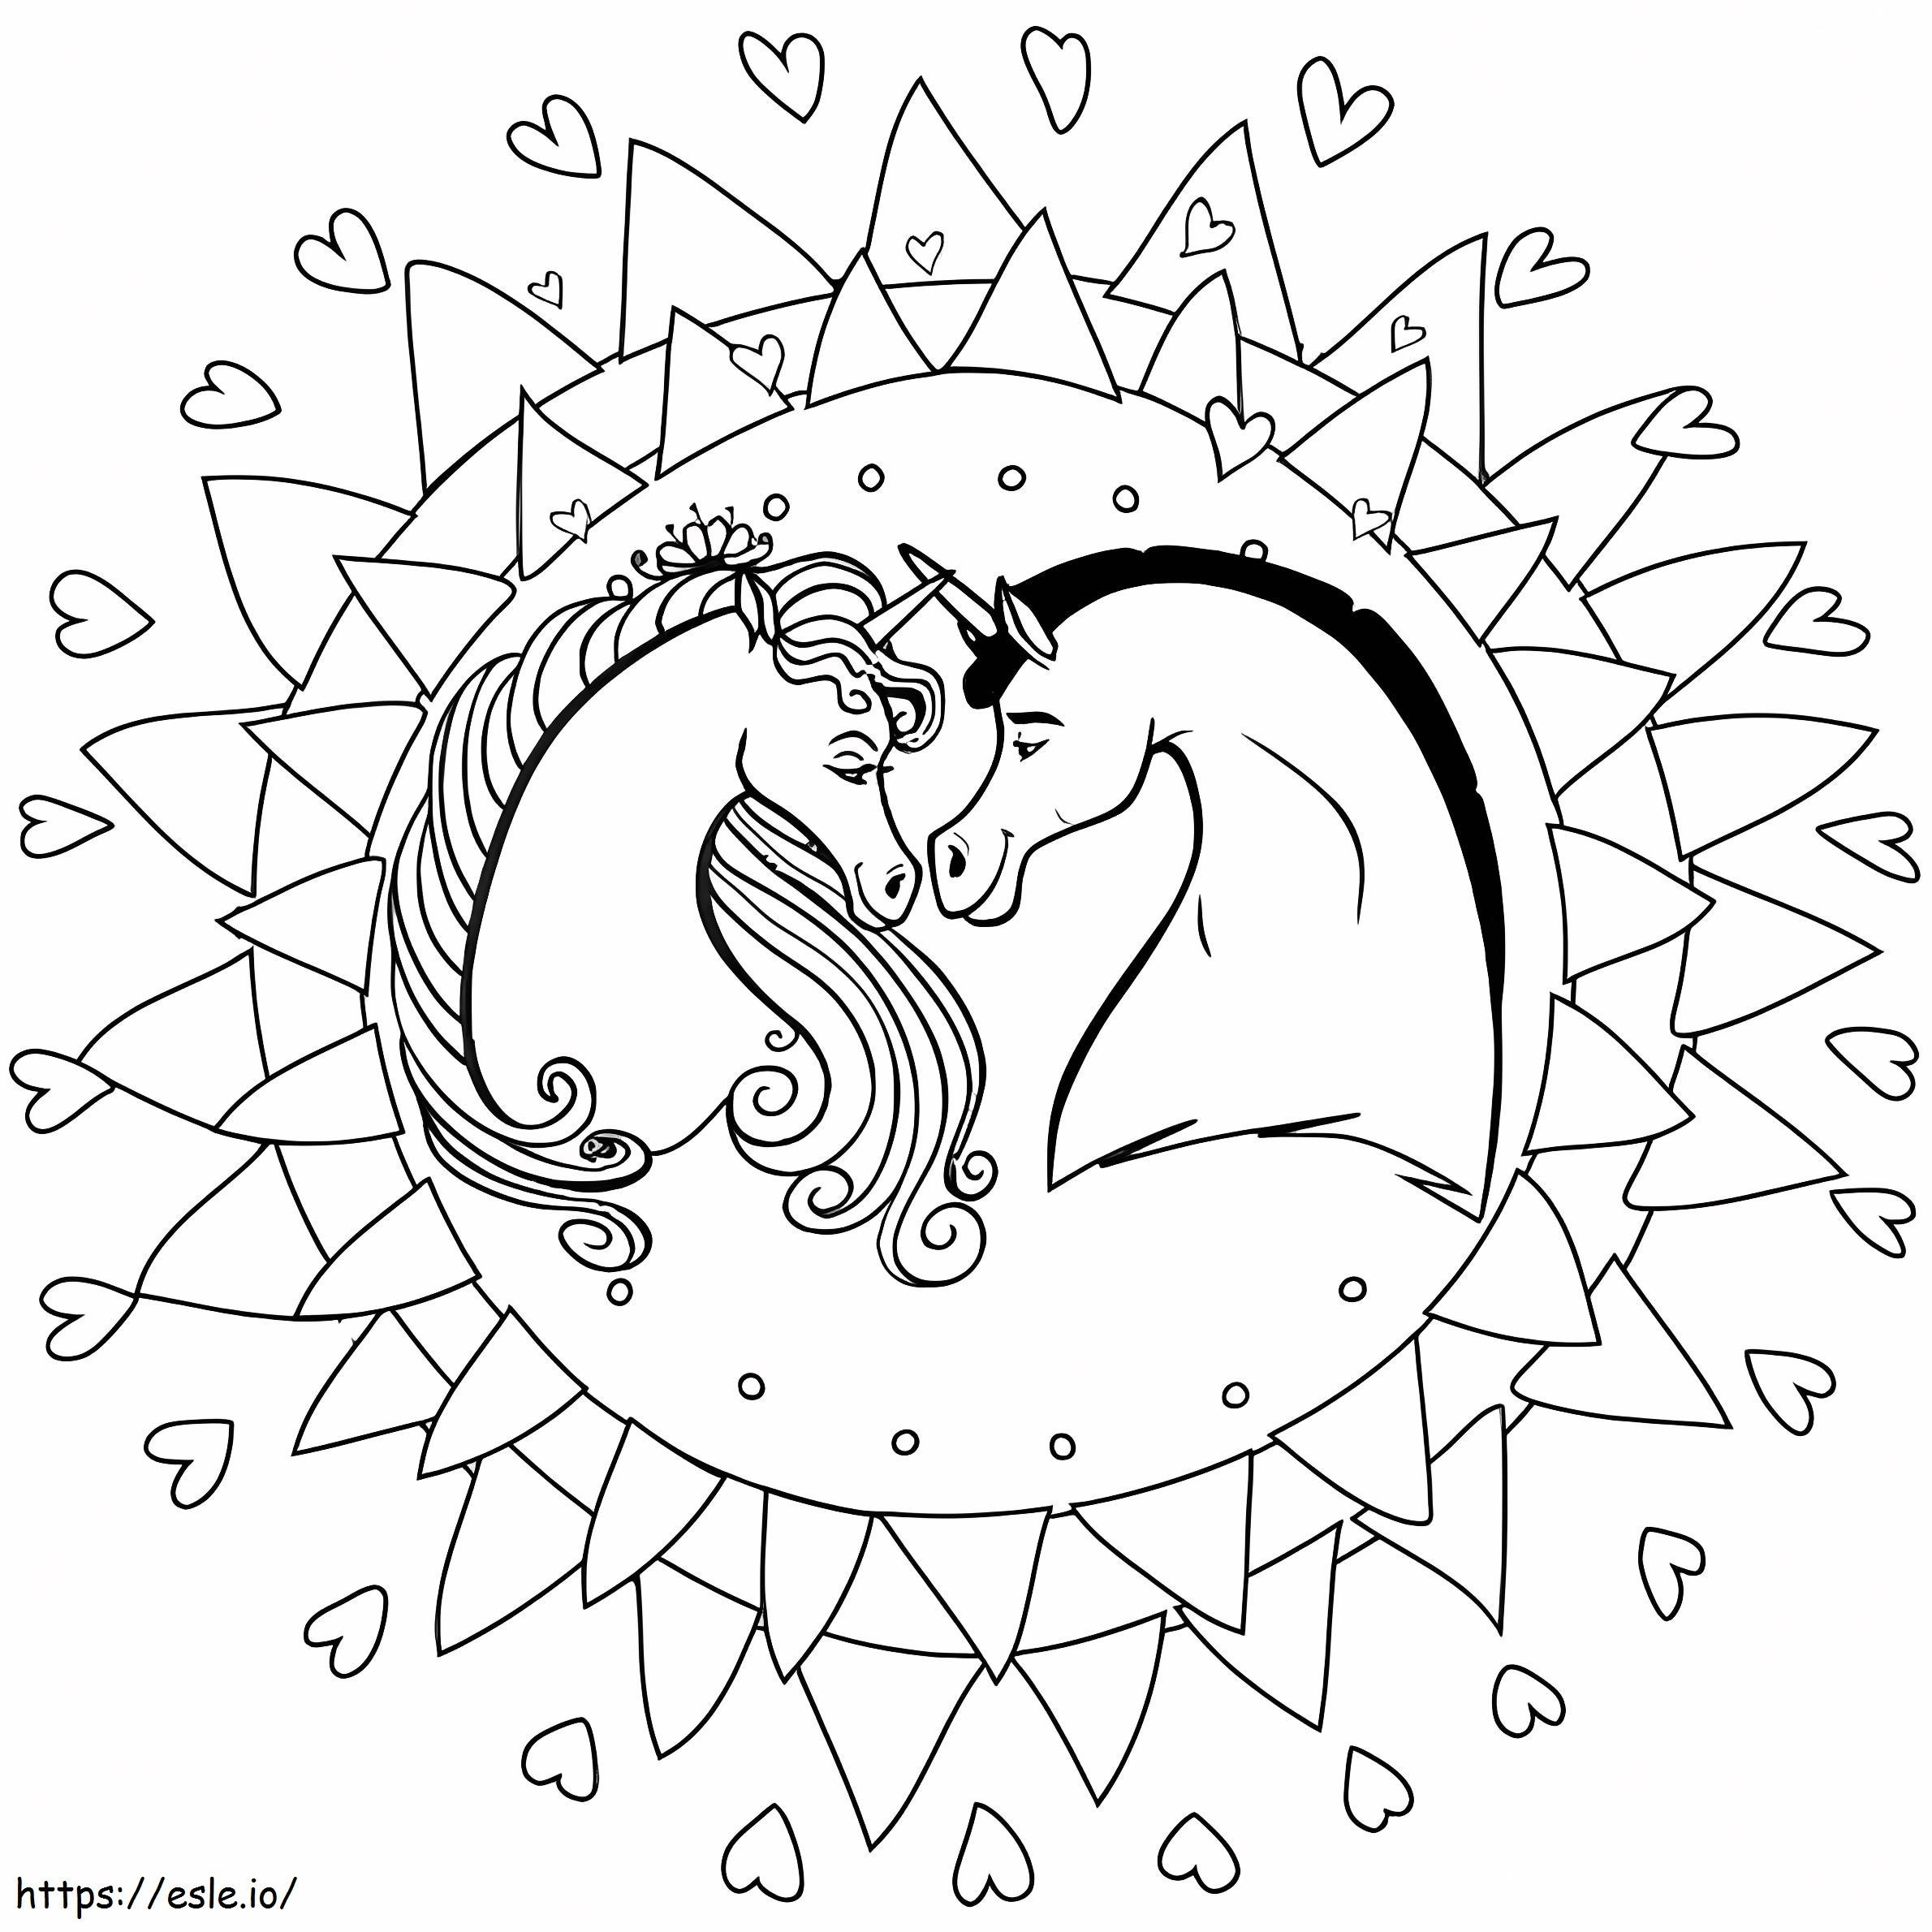 Einhorn-Mandala ausmalbilder